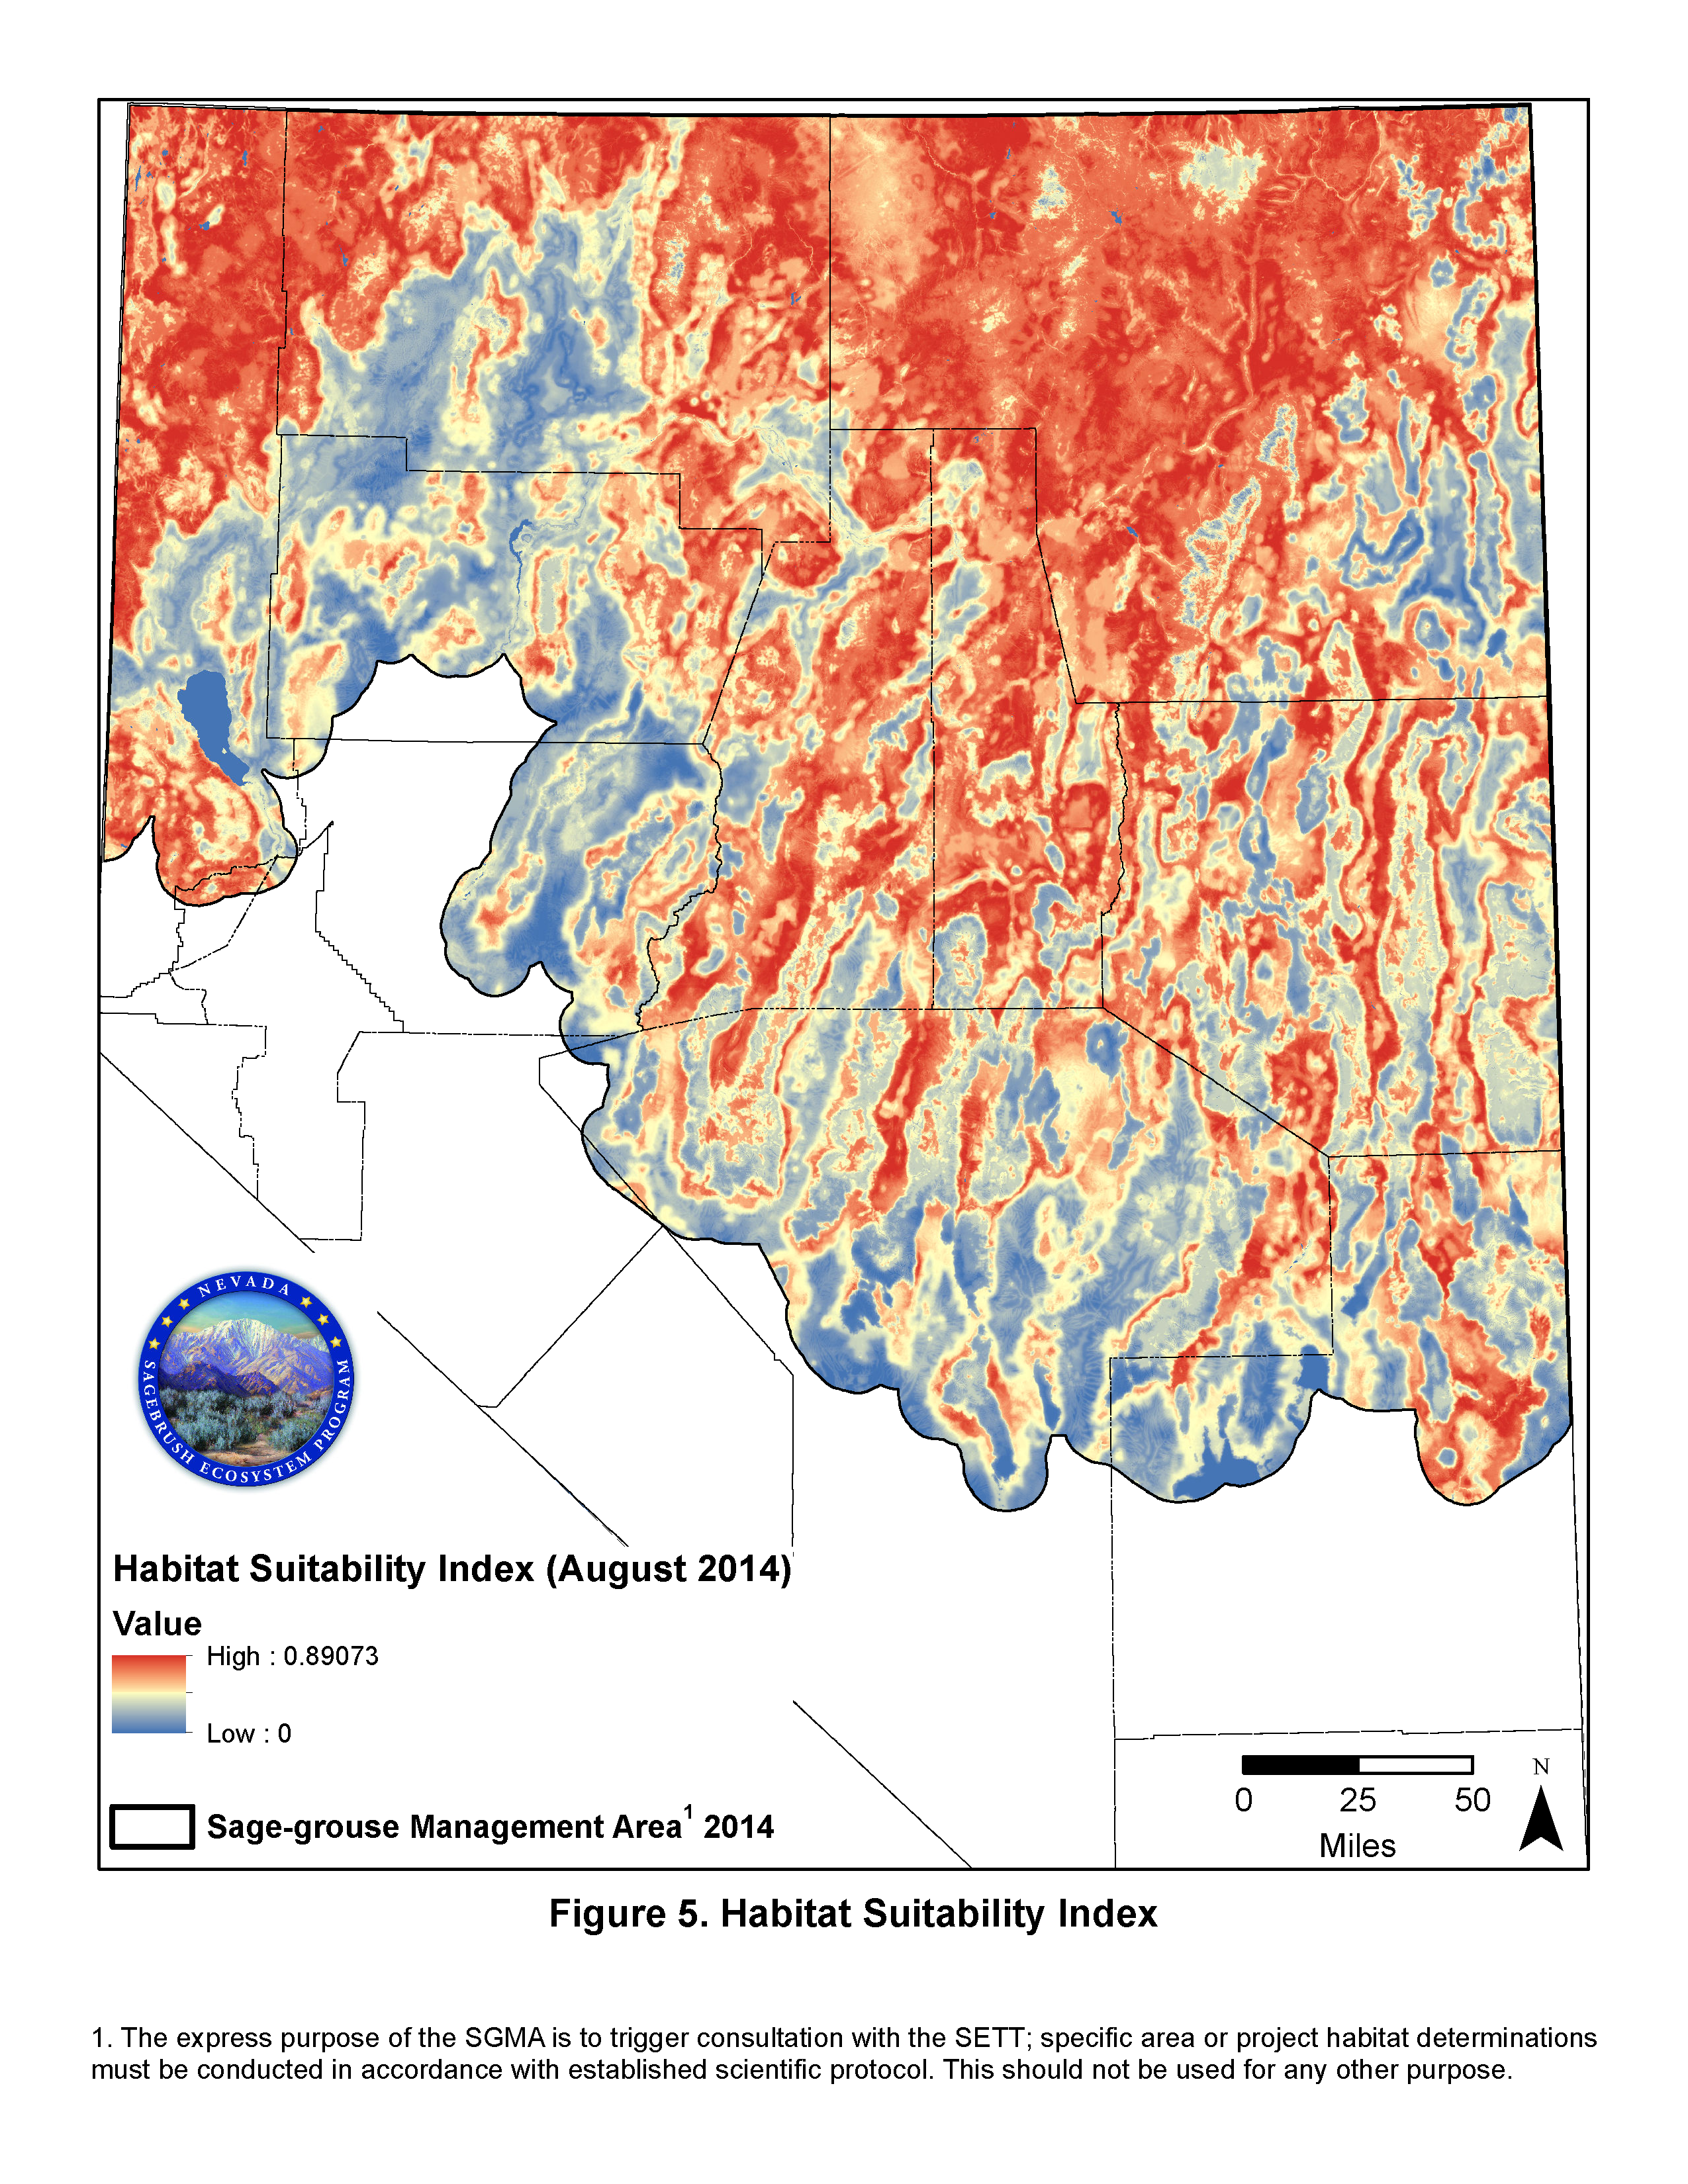 Habitat Suitability Index Image